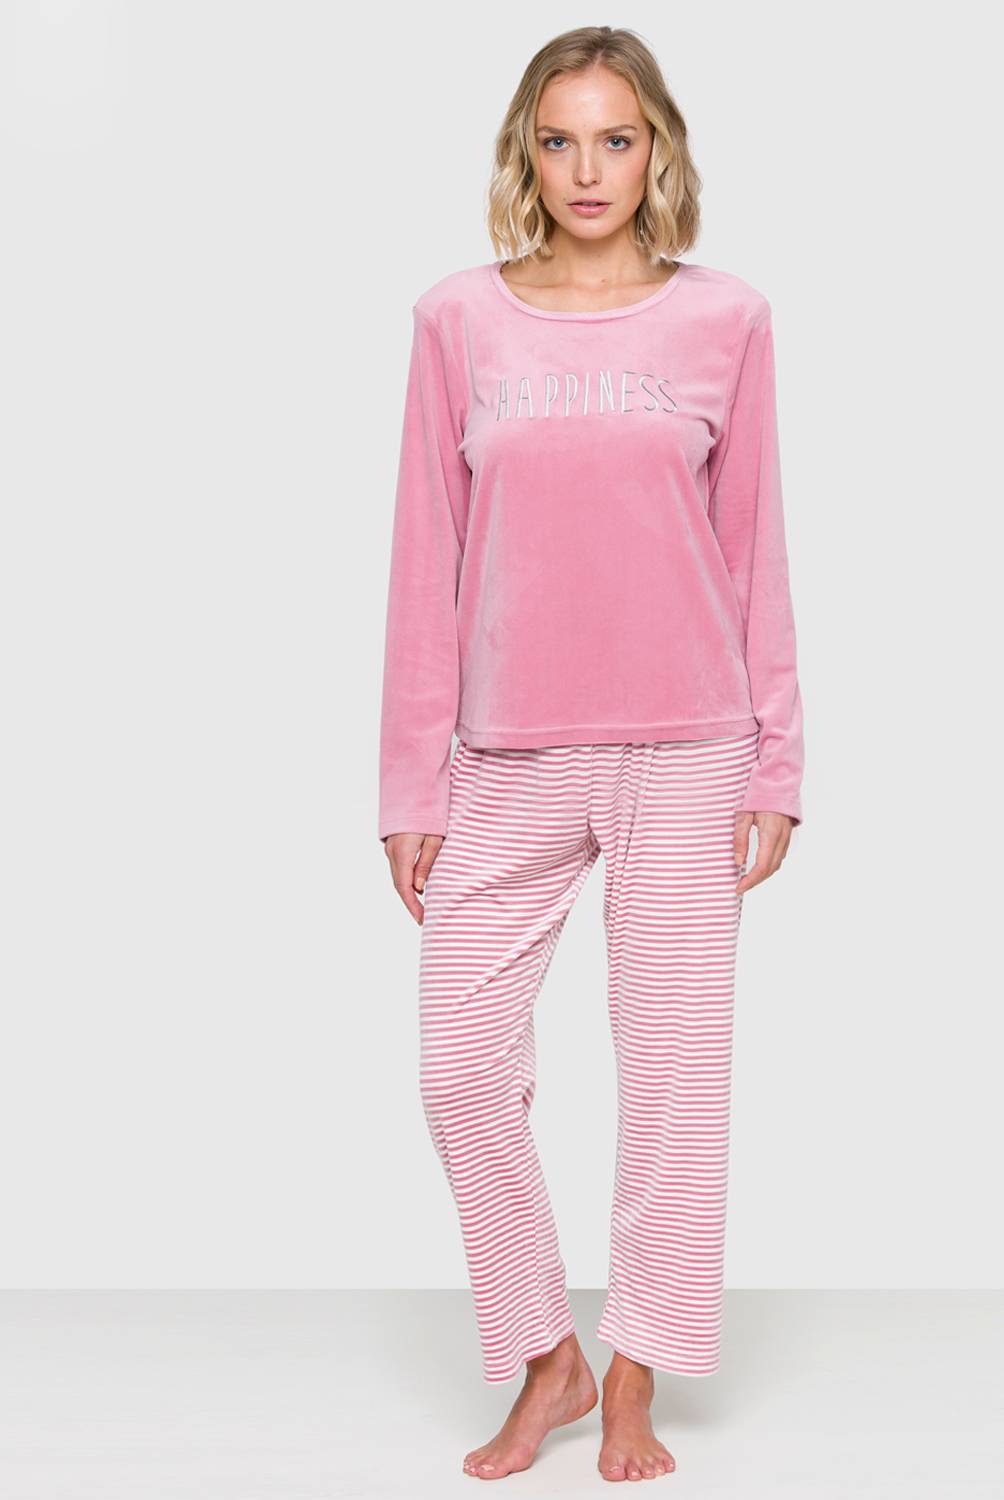 UNIVERSITY CLUB - Pijama Plush Happiness Lineas